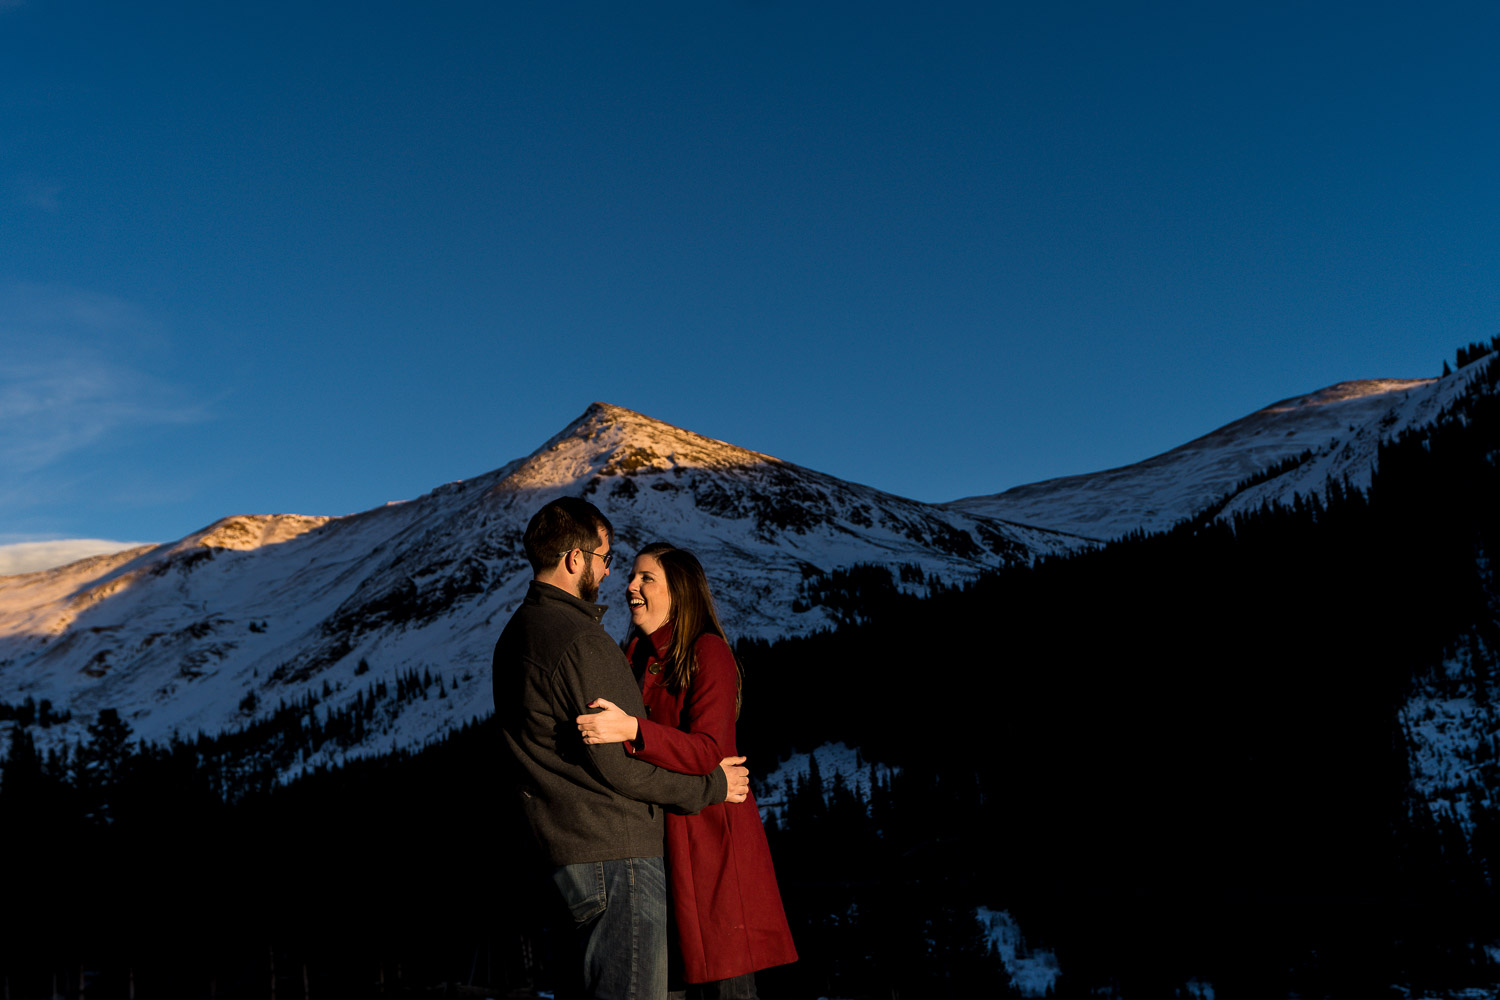 Colorado Mountain Engagement Photos with mountain backdrop